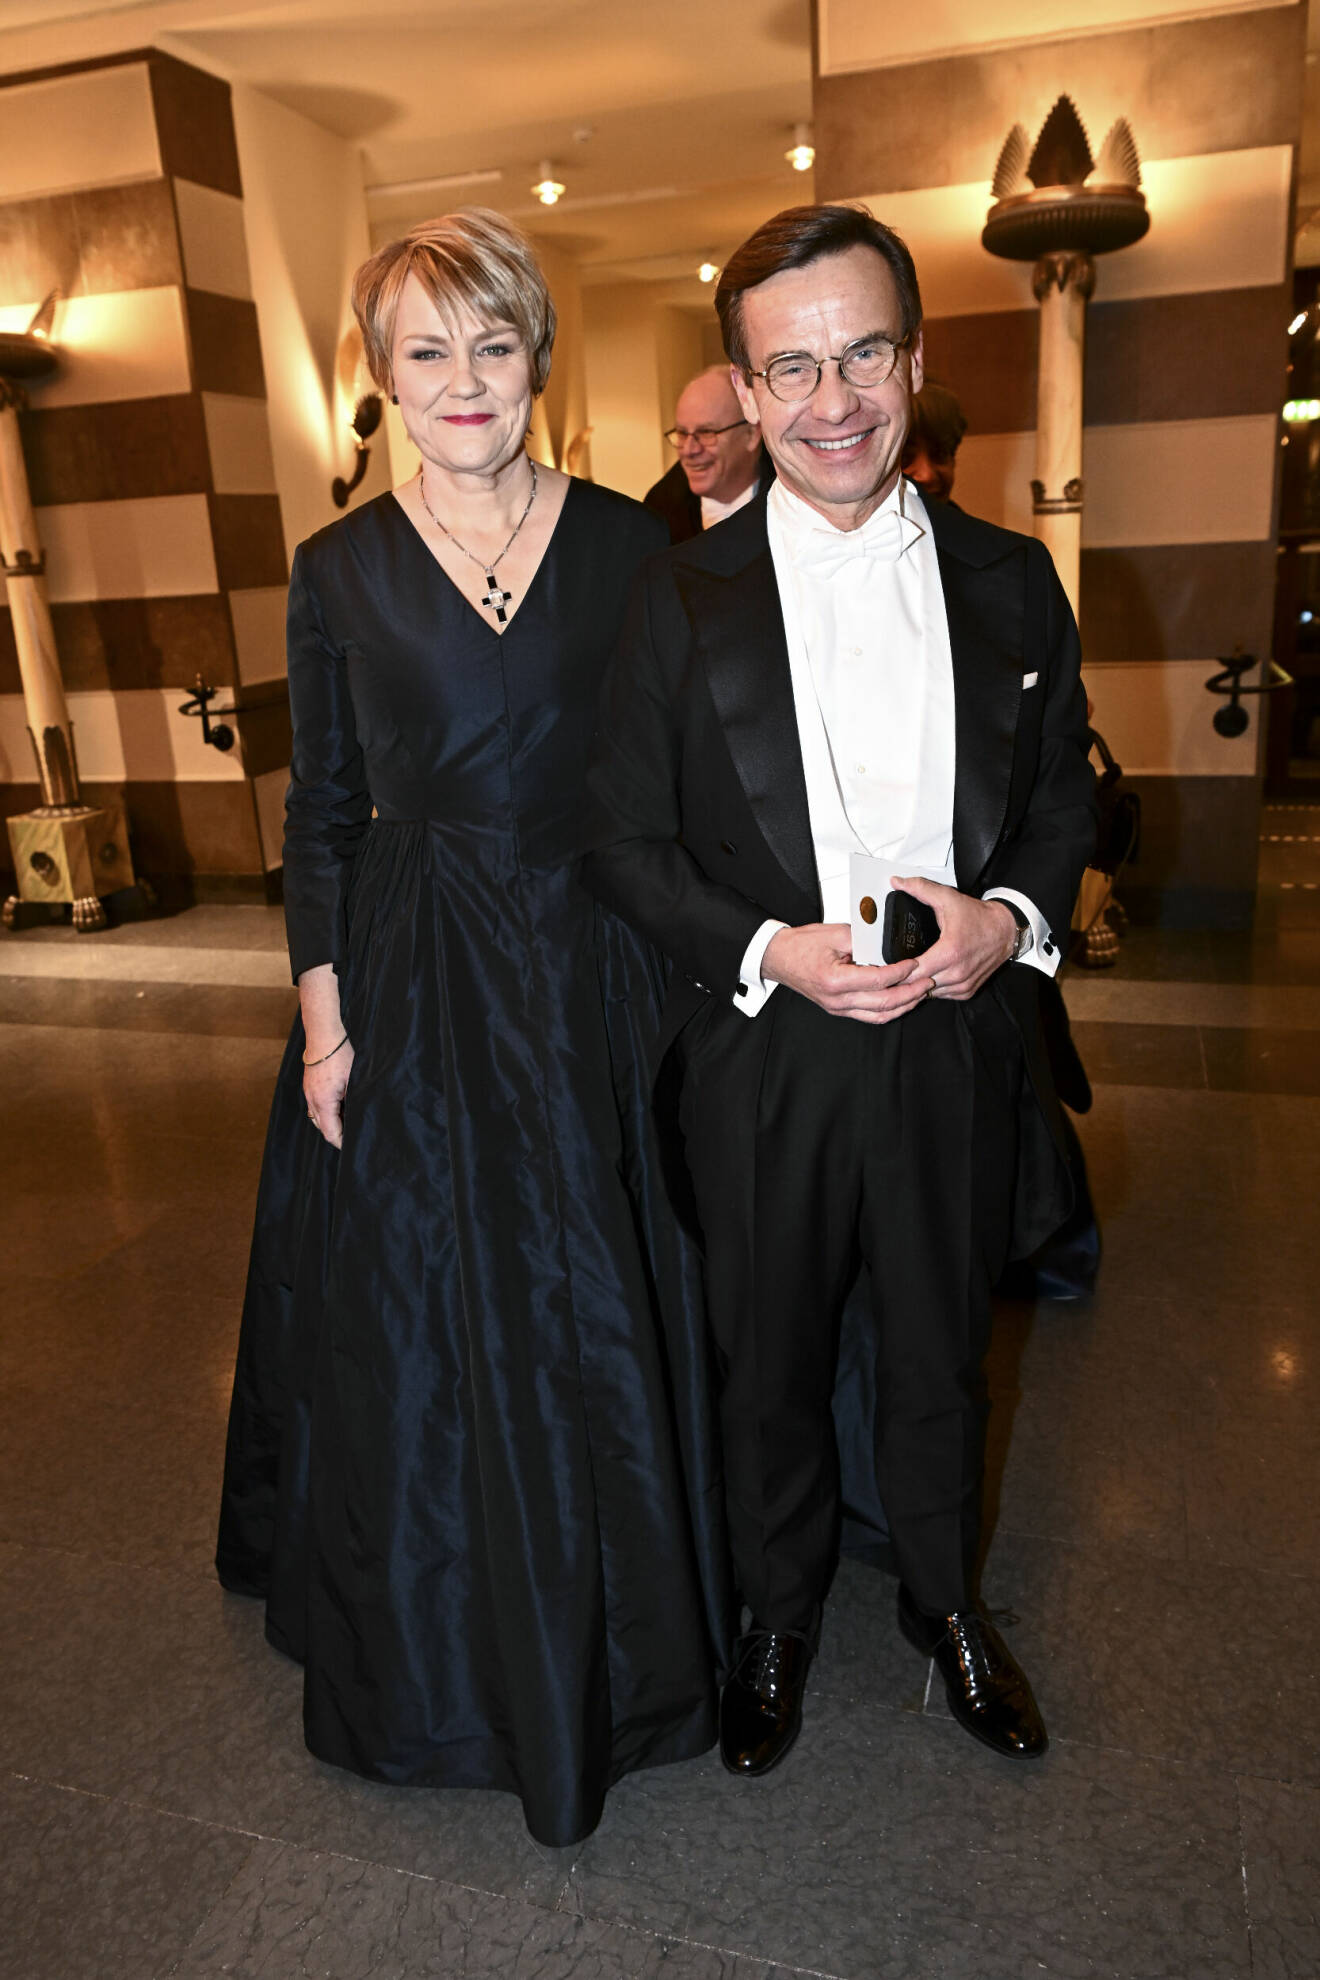 När Ulf Kristersson och hustrun anlände vid Nobelprisutdelningen den 10 december 2022, visade Birgitta upp den enorma förändringen efter 40 kilos viktnedgång. Leendet i ansiktet är detsamma som innan hälsoresan, men hon utstrålar en helt annan självkänsla nu.